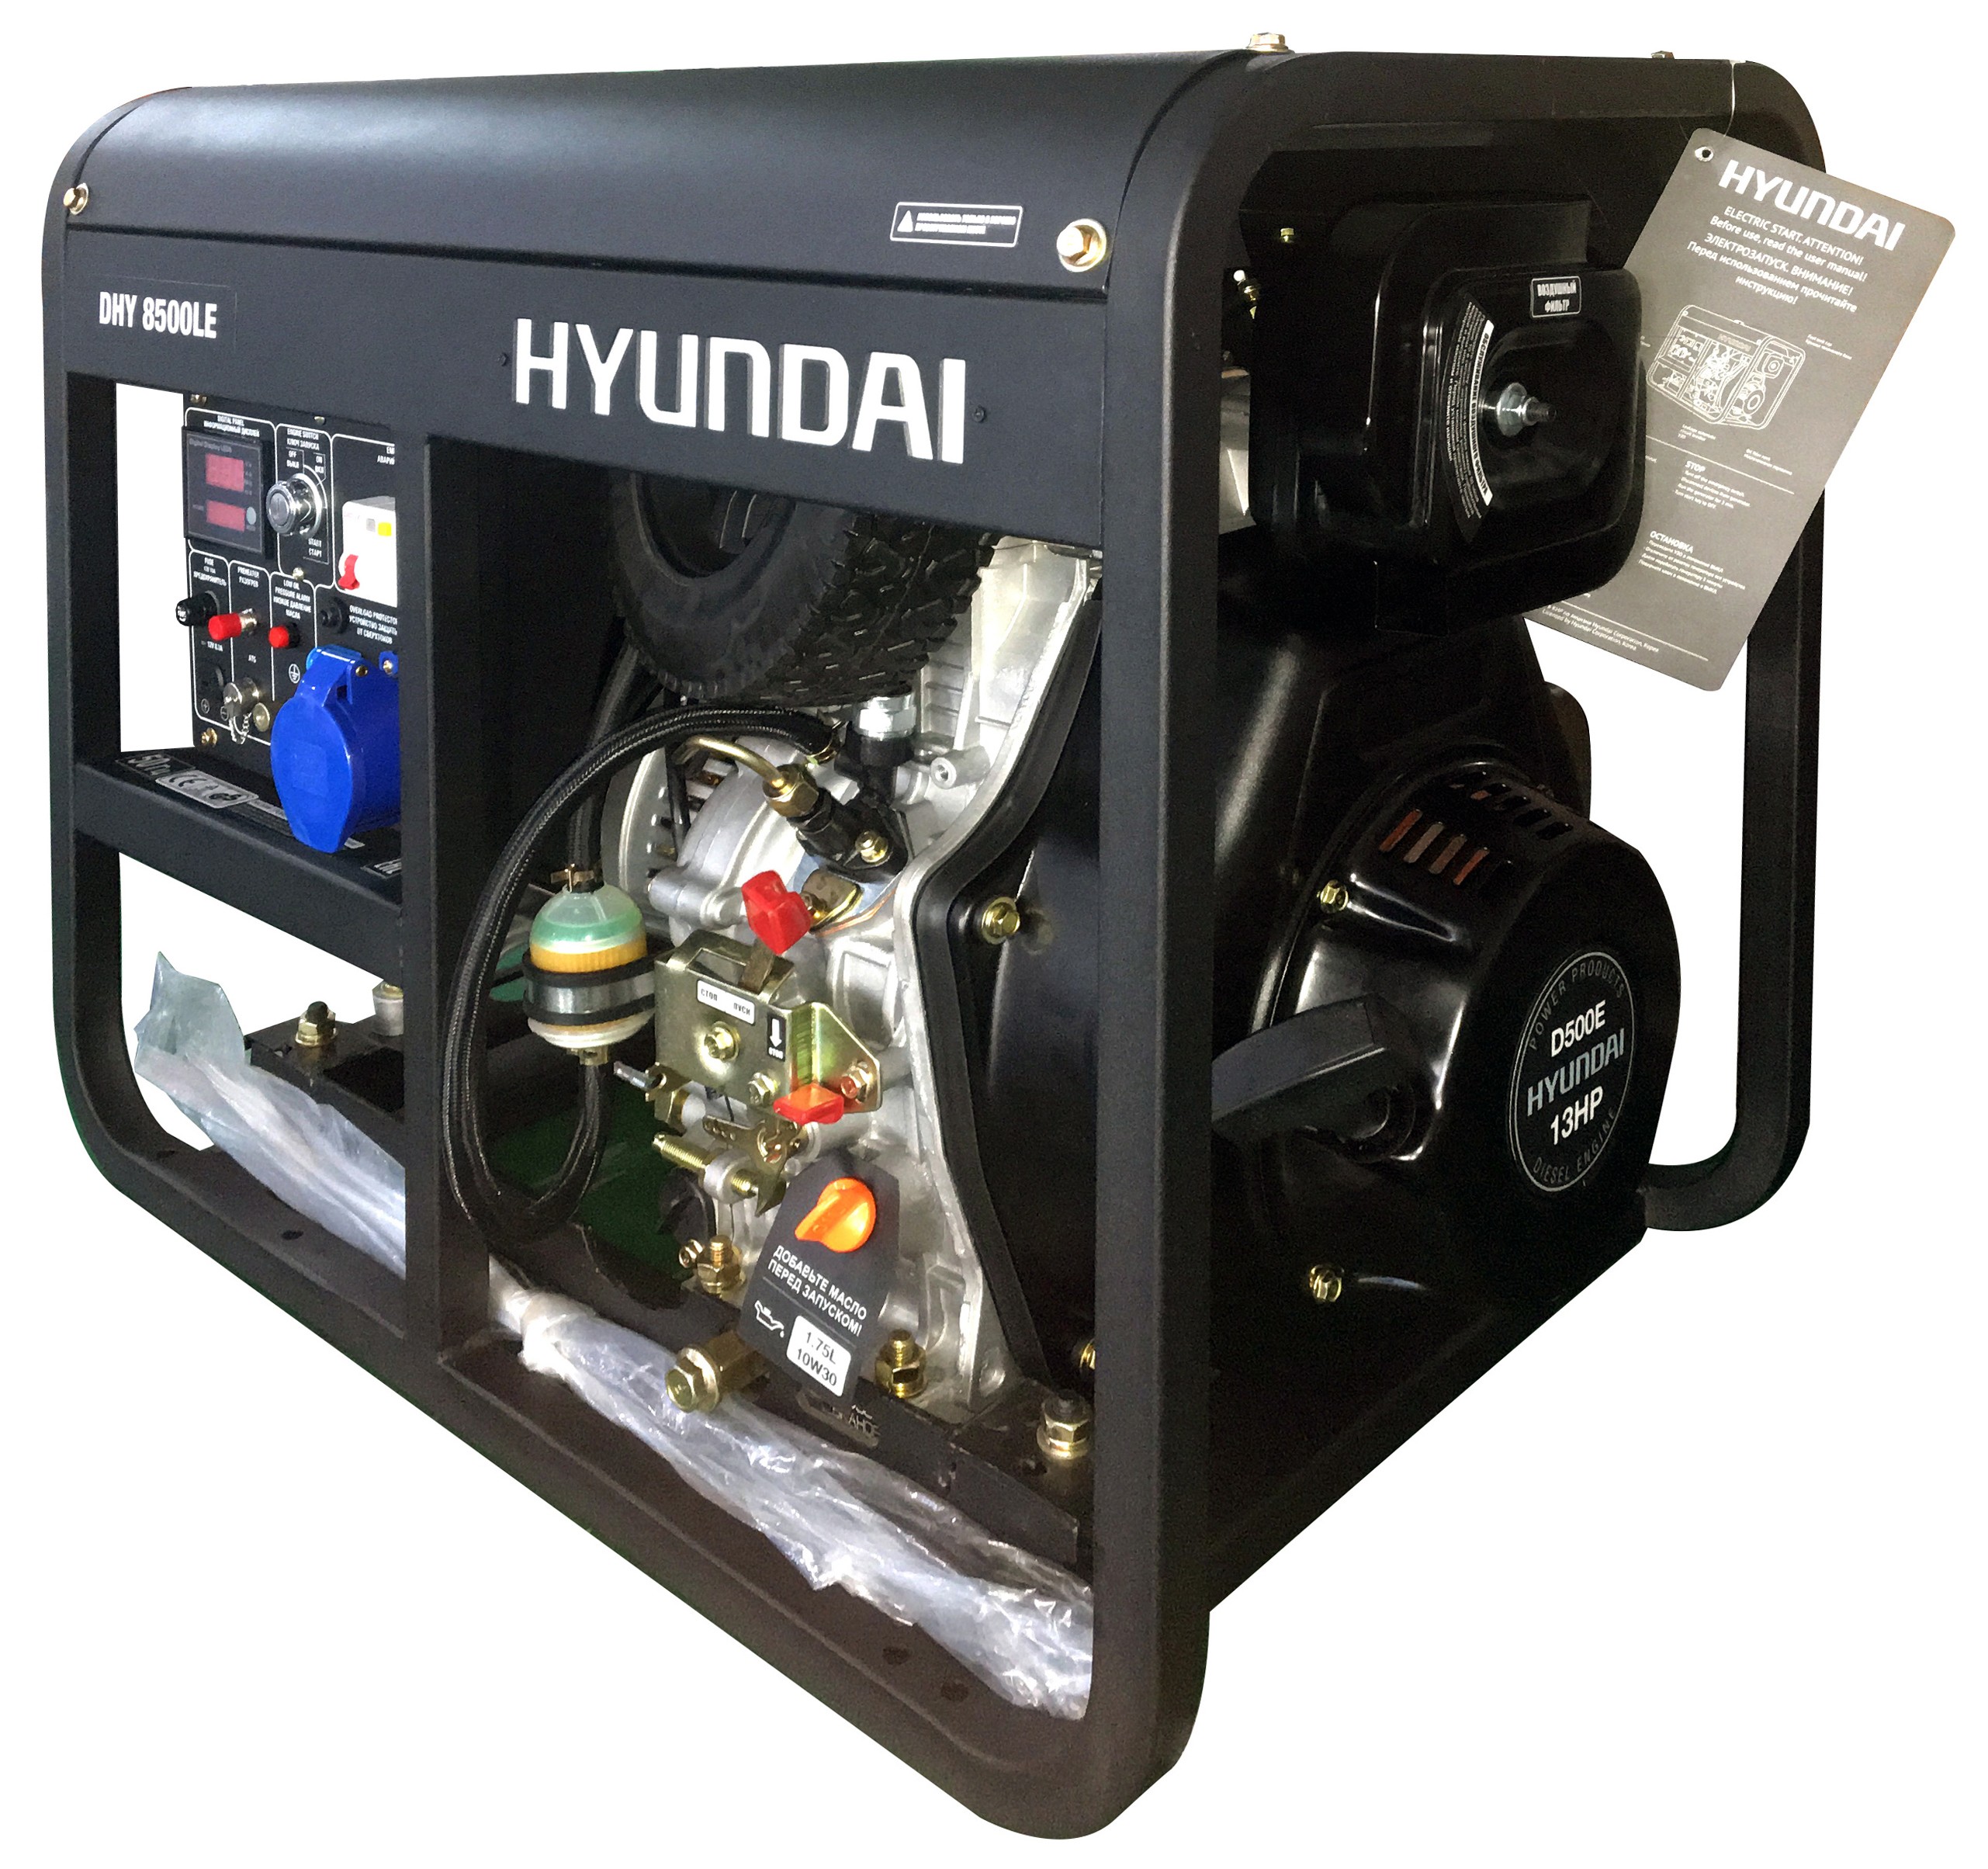 Дизельный генератор Hyundai DHY 8500LE дизельный генератор hyundai dhy 8000le 3